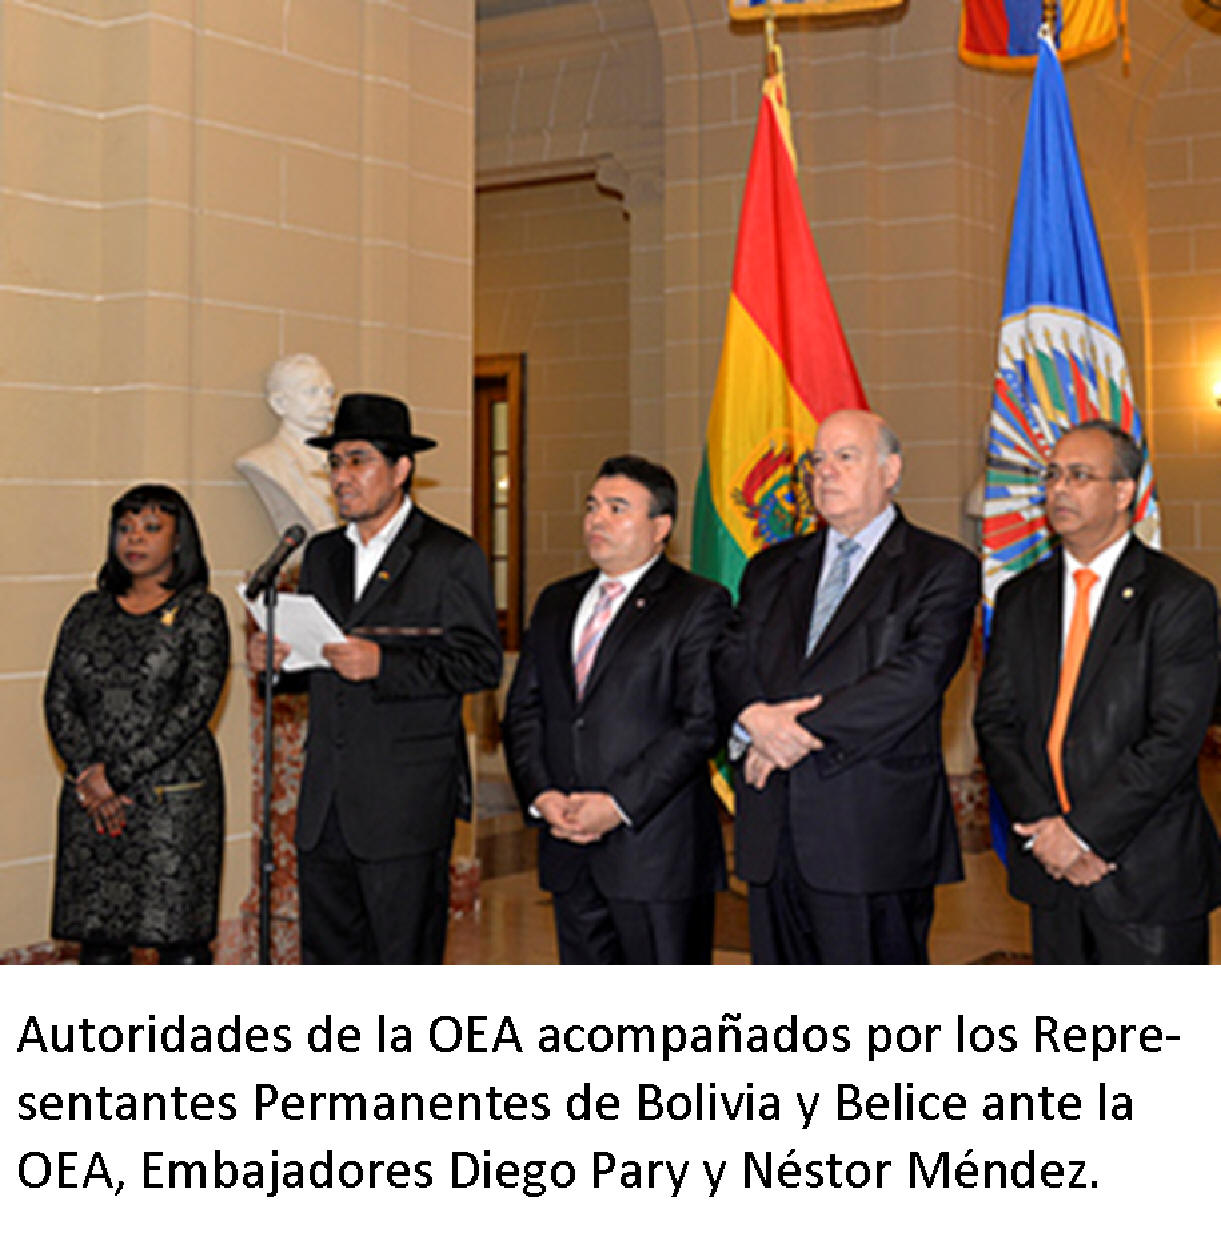 Autoridades de la OEA acompaados por los Representantes Permanentes de Bolivia y Belice ante la OEA, Embajadores Diego Pary y Nstor Mndez.